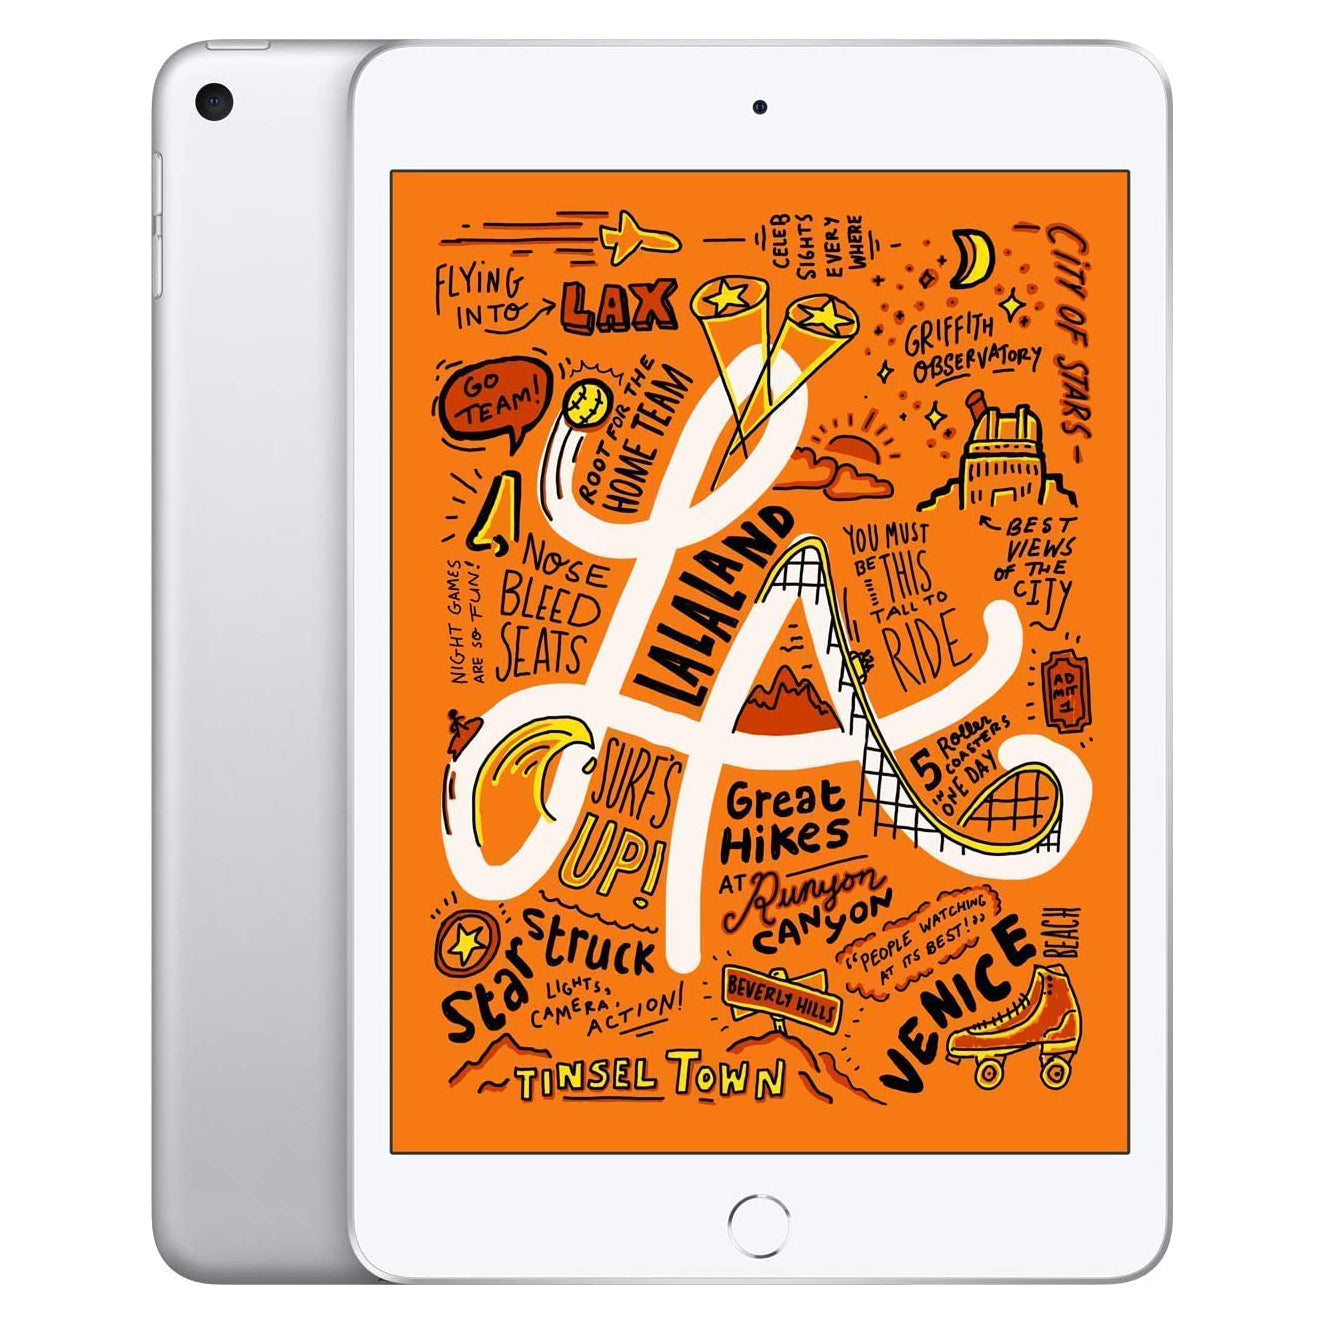 Apple iPad Mini 5th Generation Wi-Fi + 4G Cellular (Refurbished)